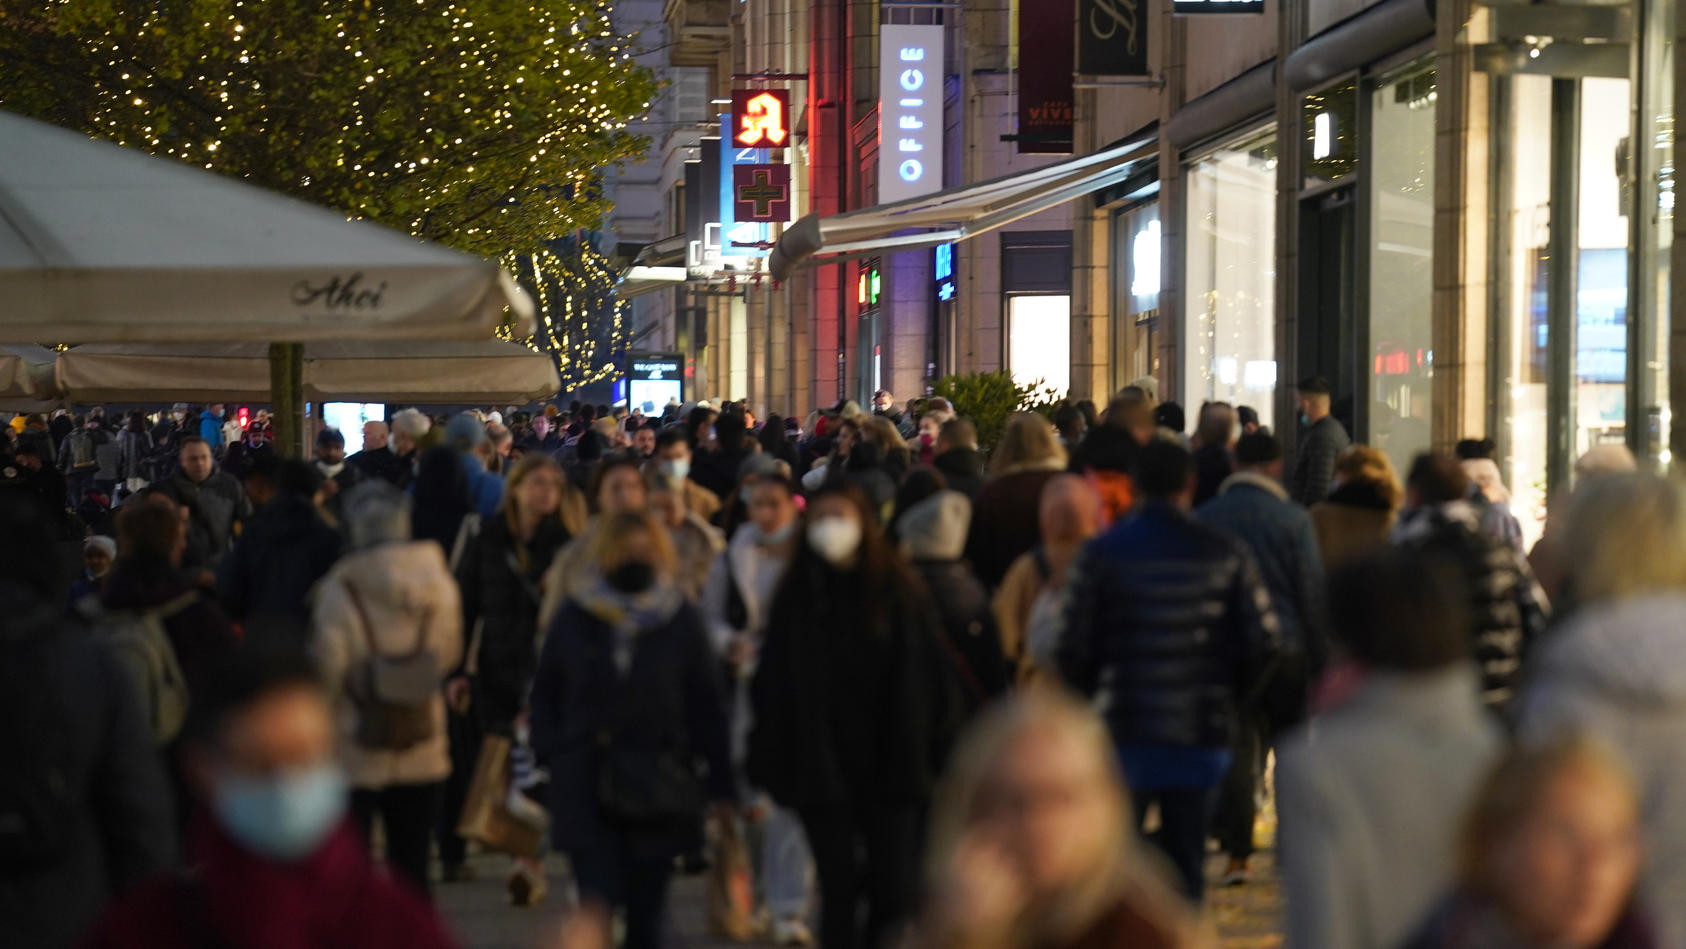 06.11.2021, Hamburg: Passanten gehen in der Spitalerstraße in der Innenstadt einkaufen. Der Handelsverband Nord informiert am 08.11.2021 über den Handel im Jahr 2021 und zu Erwartungen zum Weihnachtsgeschäft. Foto: Marcus Brandt/dpa +++ dpa-Bildfunk 